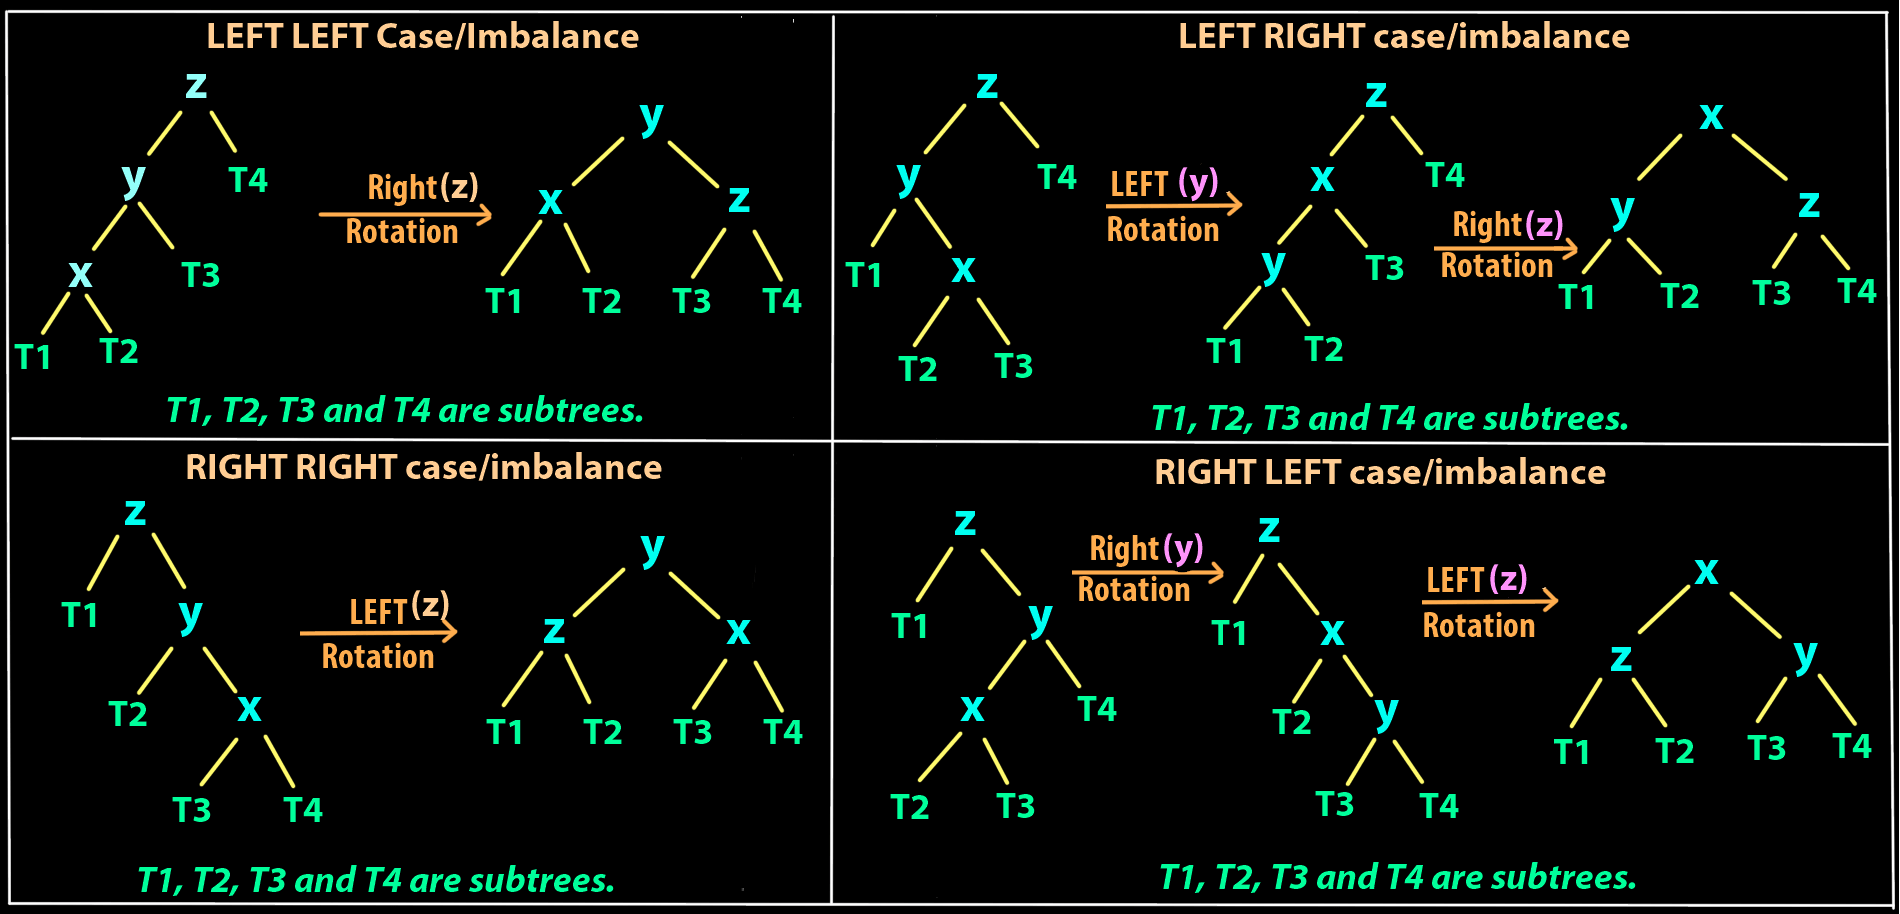 avl tree - types of rotations